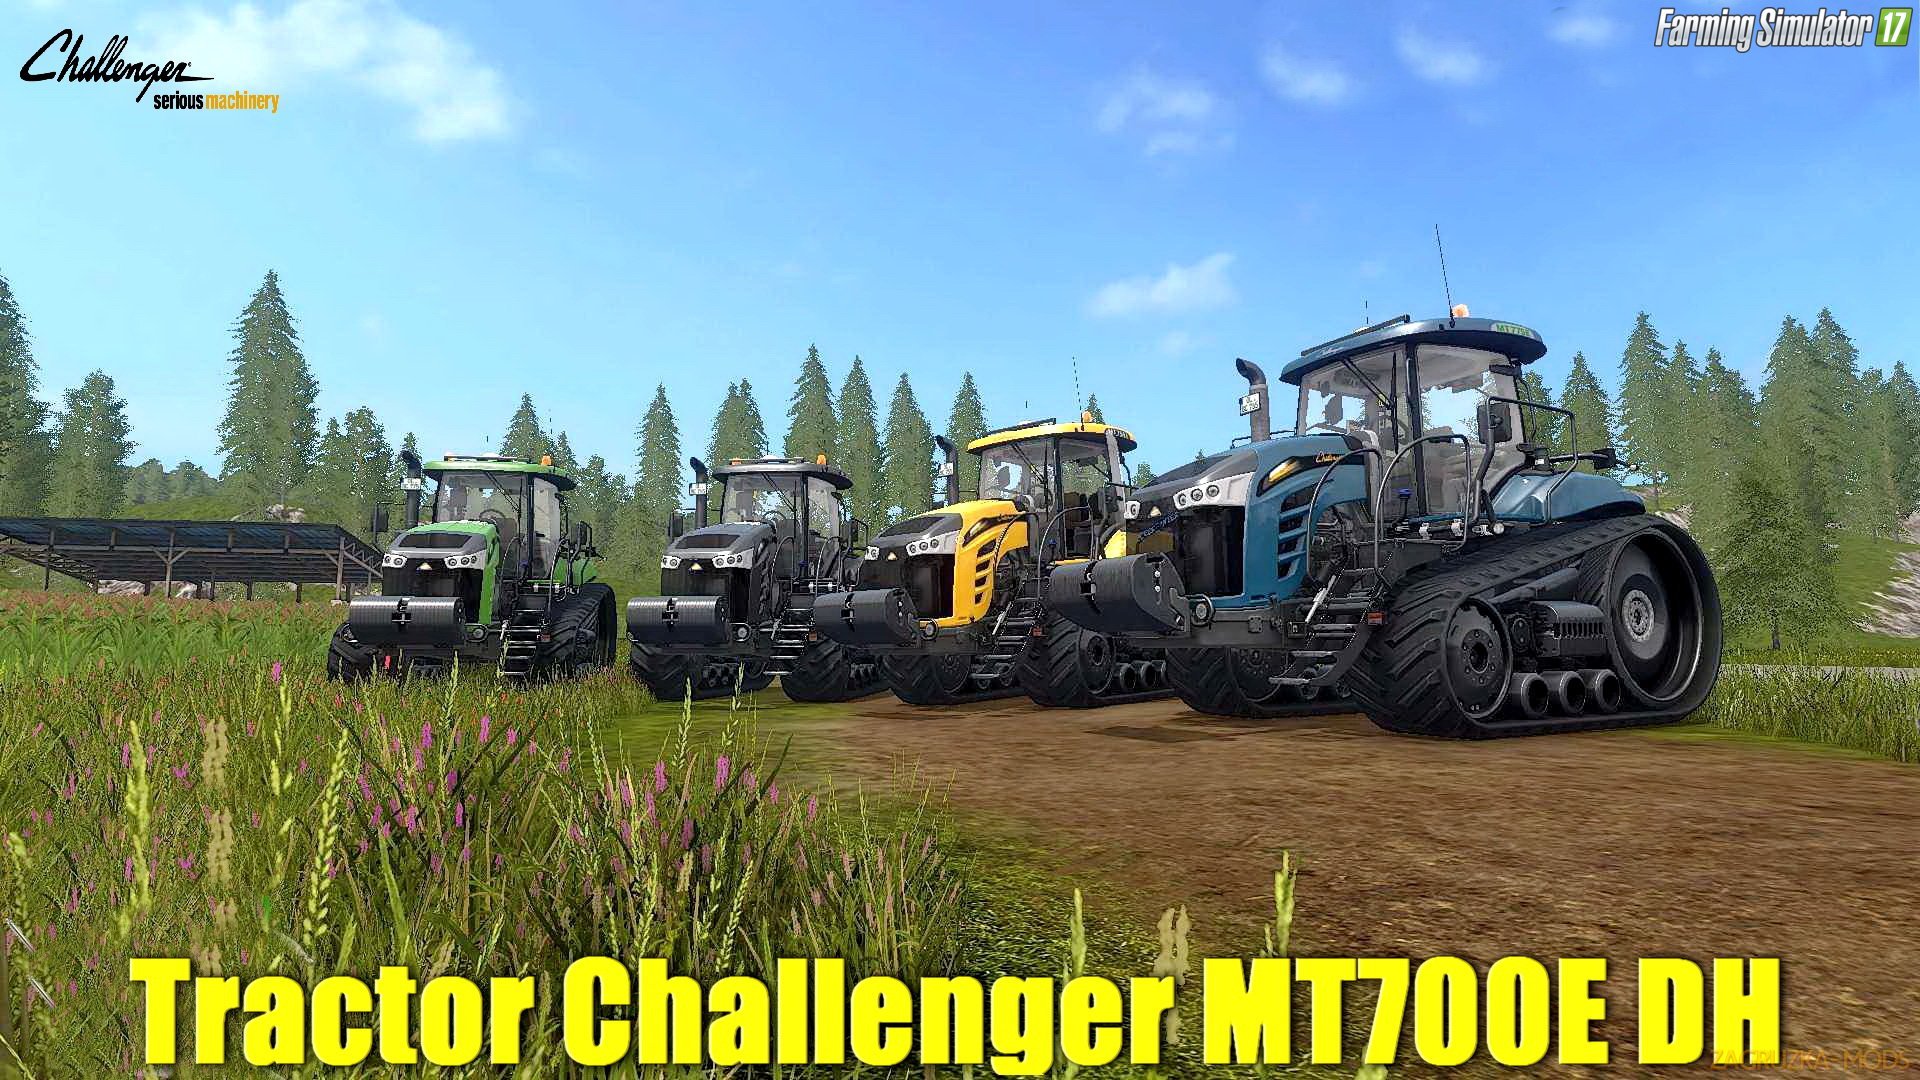 Challenger MT700E DH v1.0 by Bonecrusher6 for FS 17